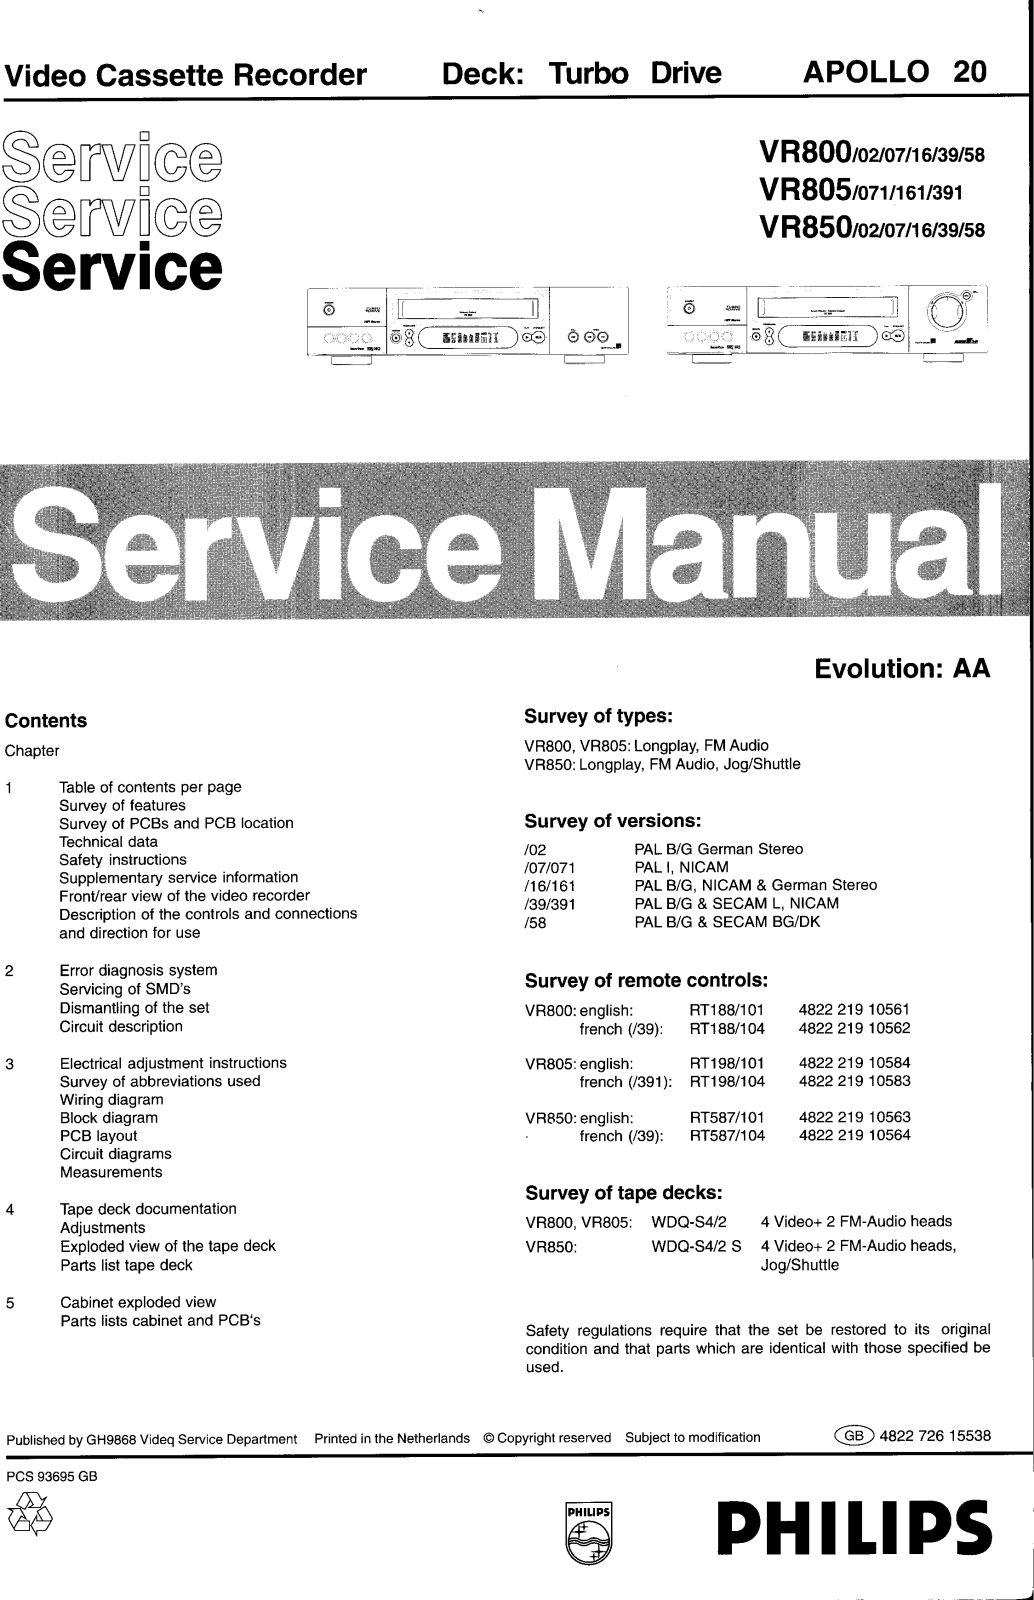 Philips Apollo20 Service Manual